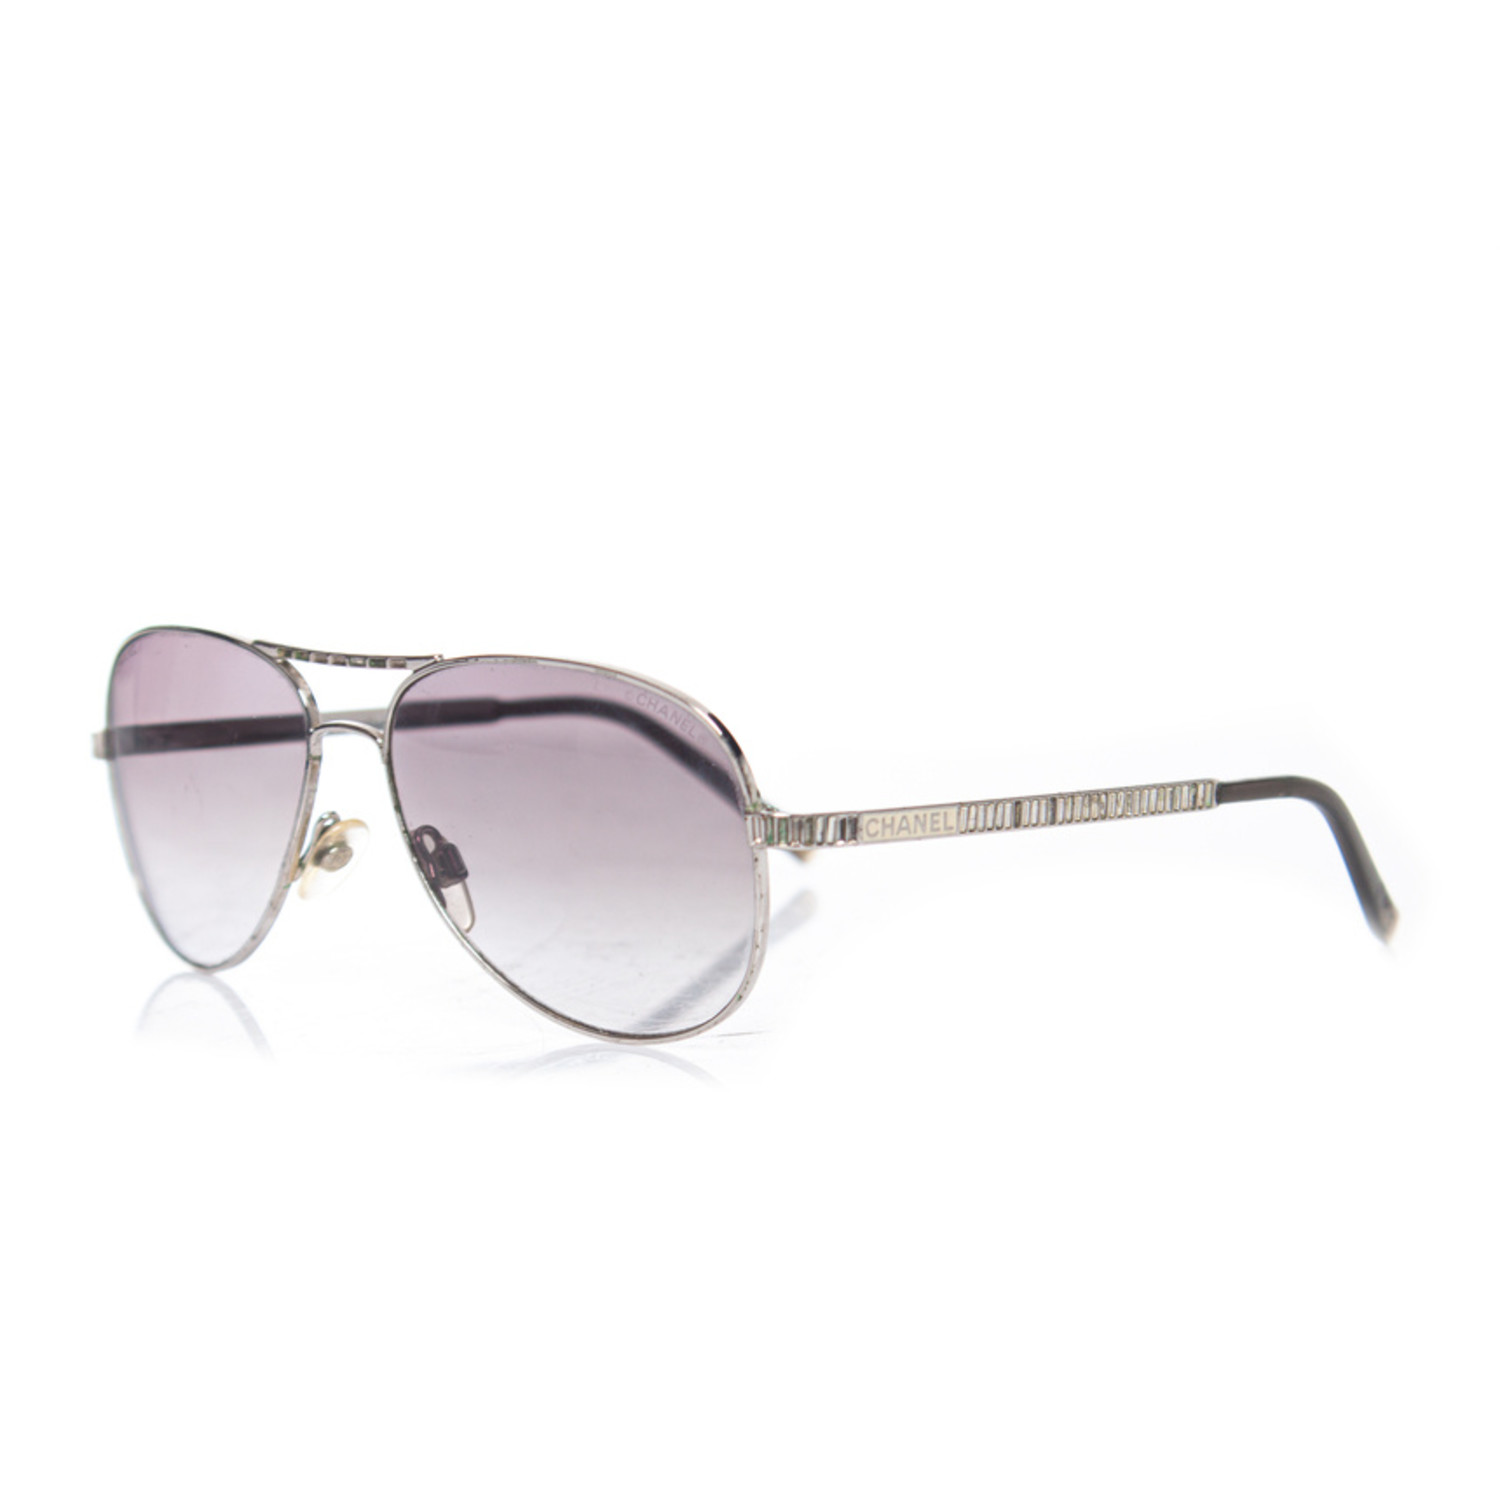 Chanel, Aviator sunglasses with rhinestones - Unique Designer Pieces